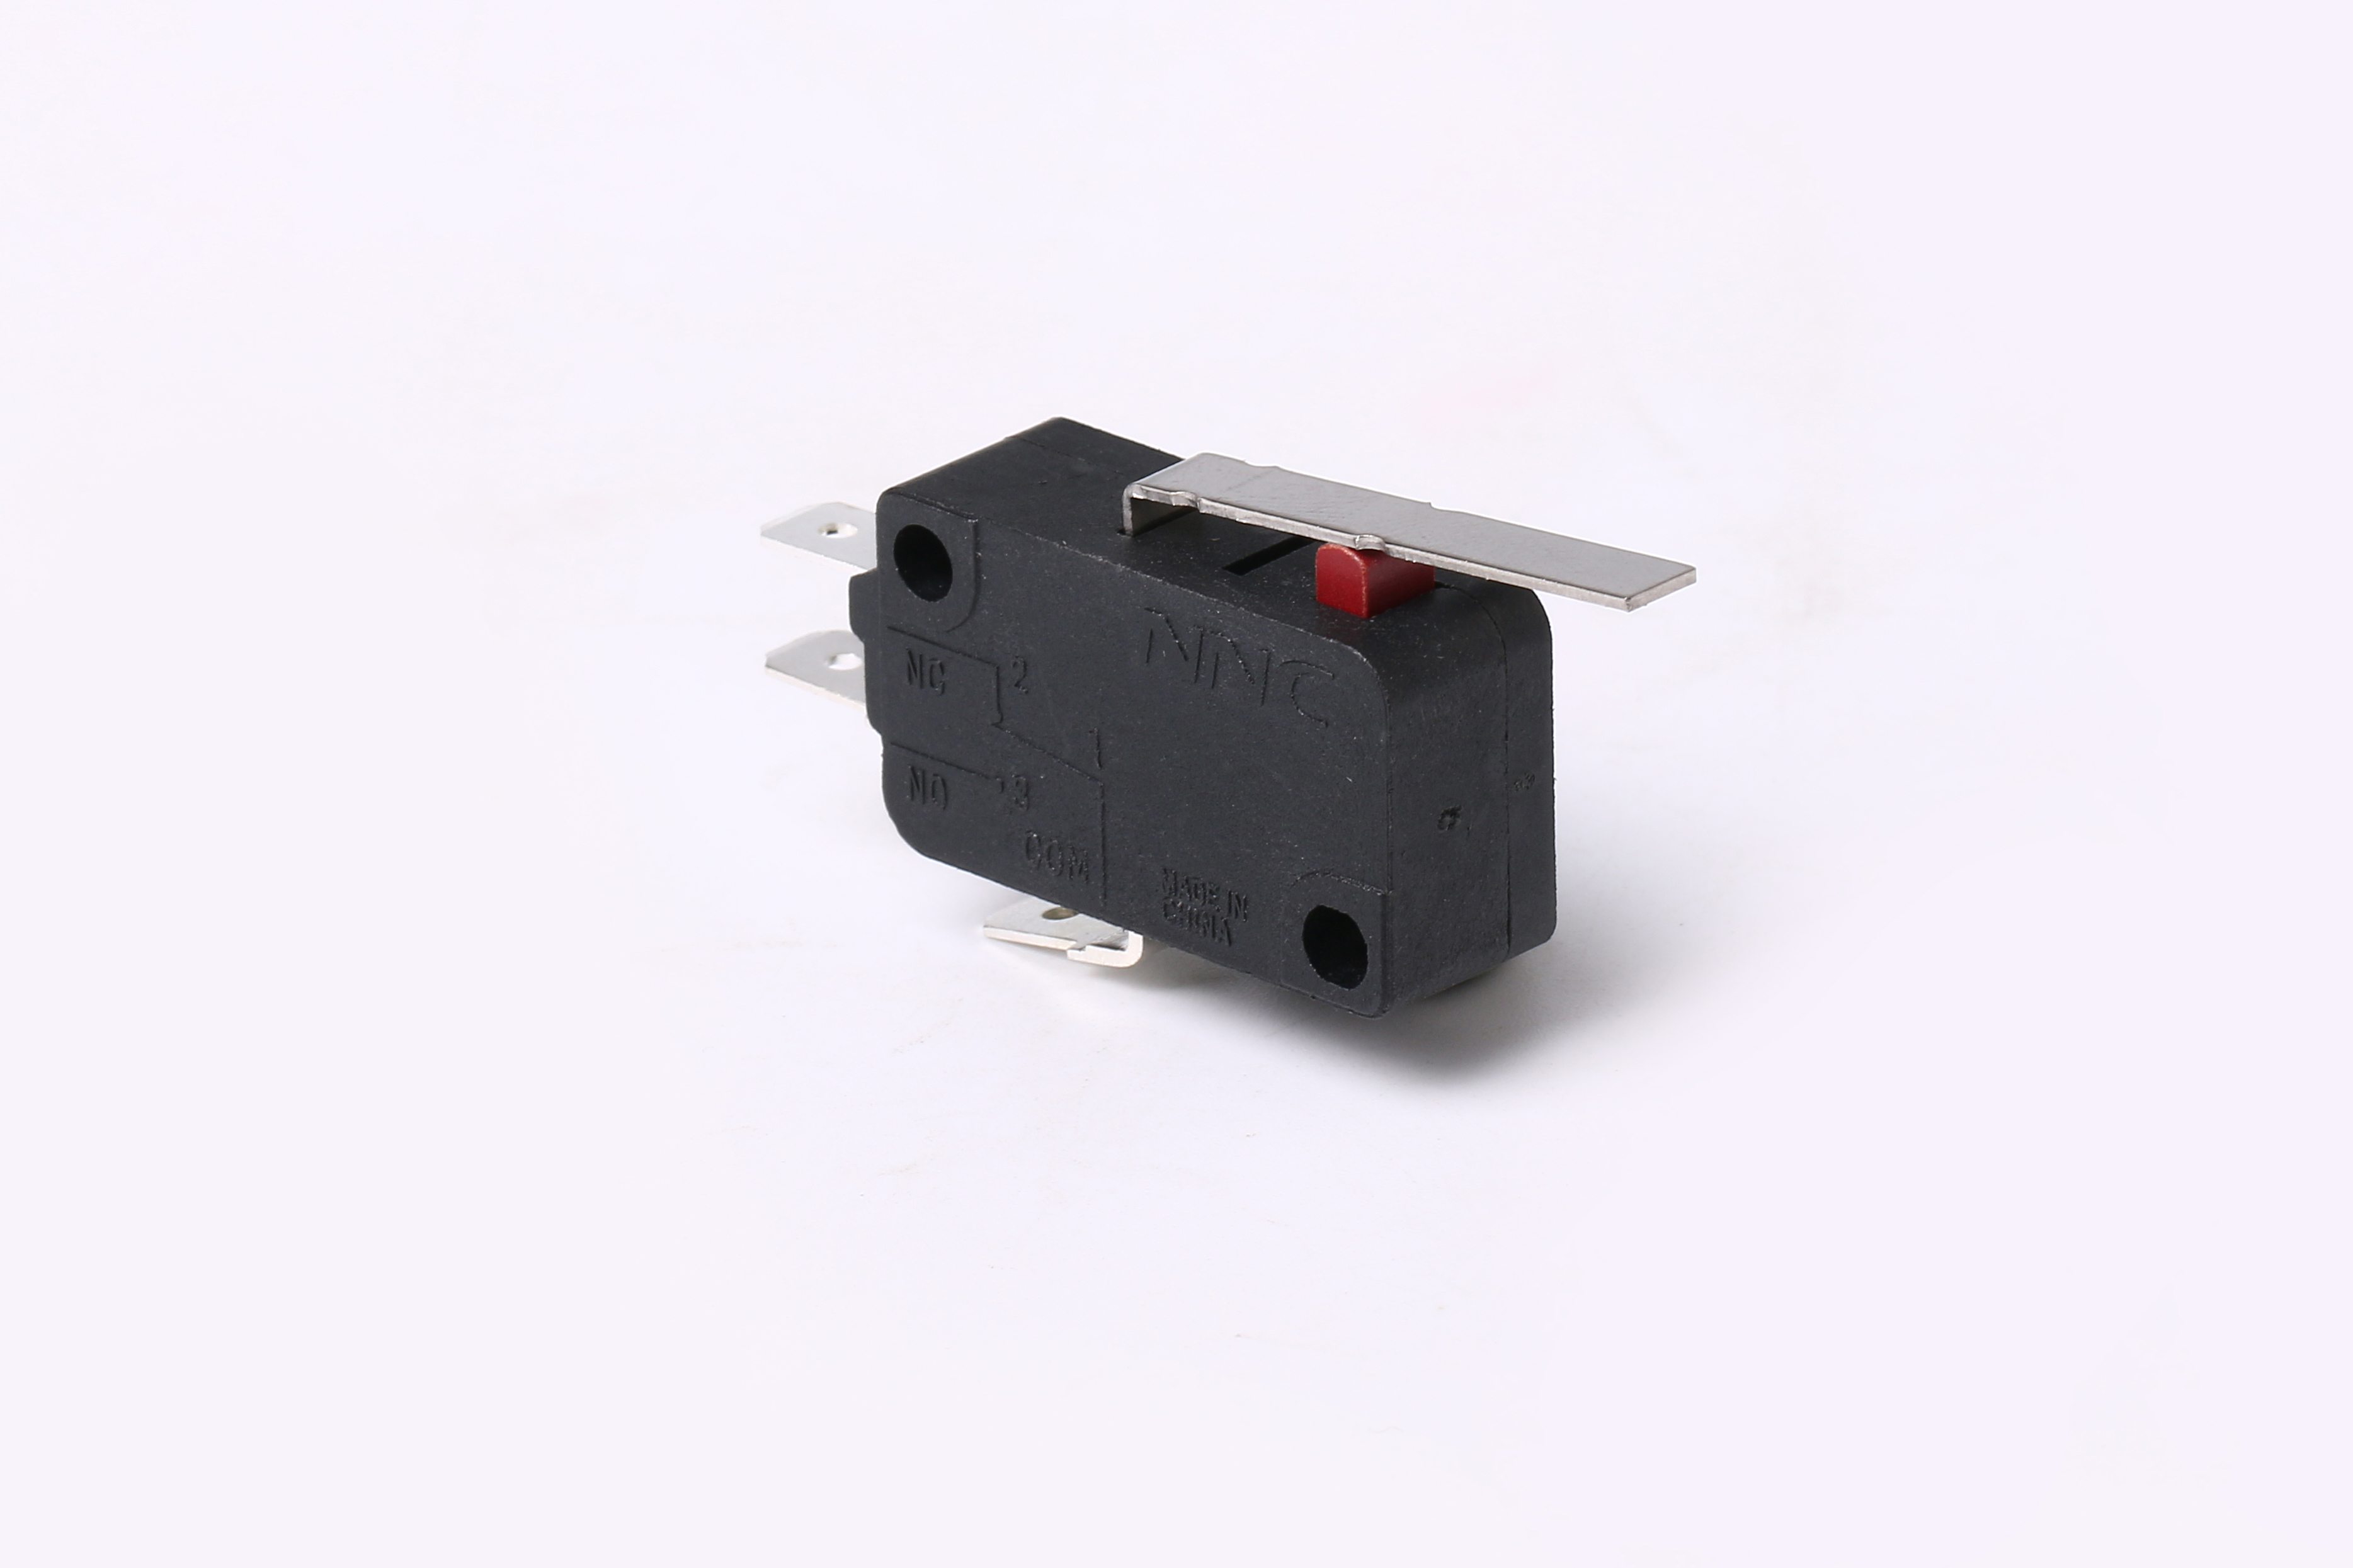 Microinterruptor de alta confiabilidad con palanca de bisagra de corriente de conmutación de hasta 21A